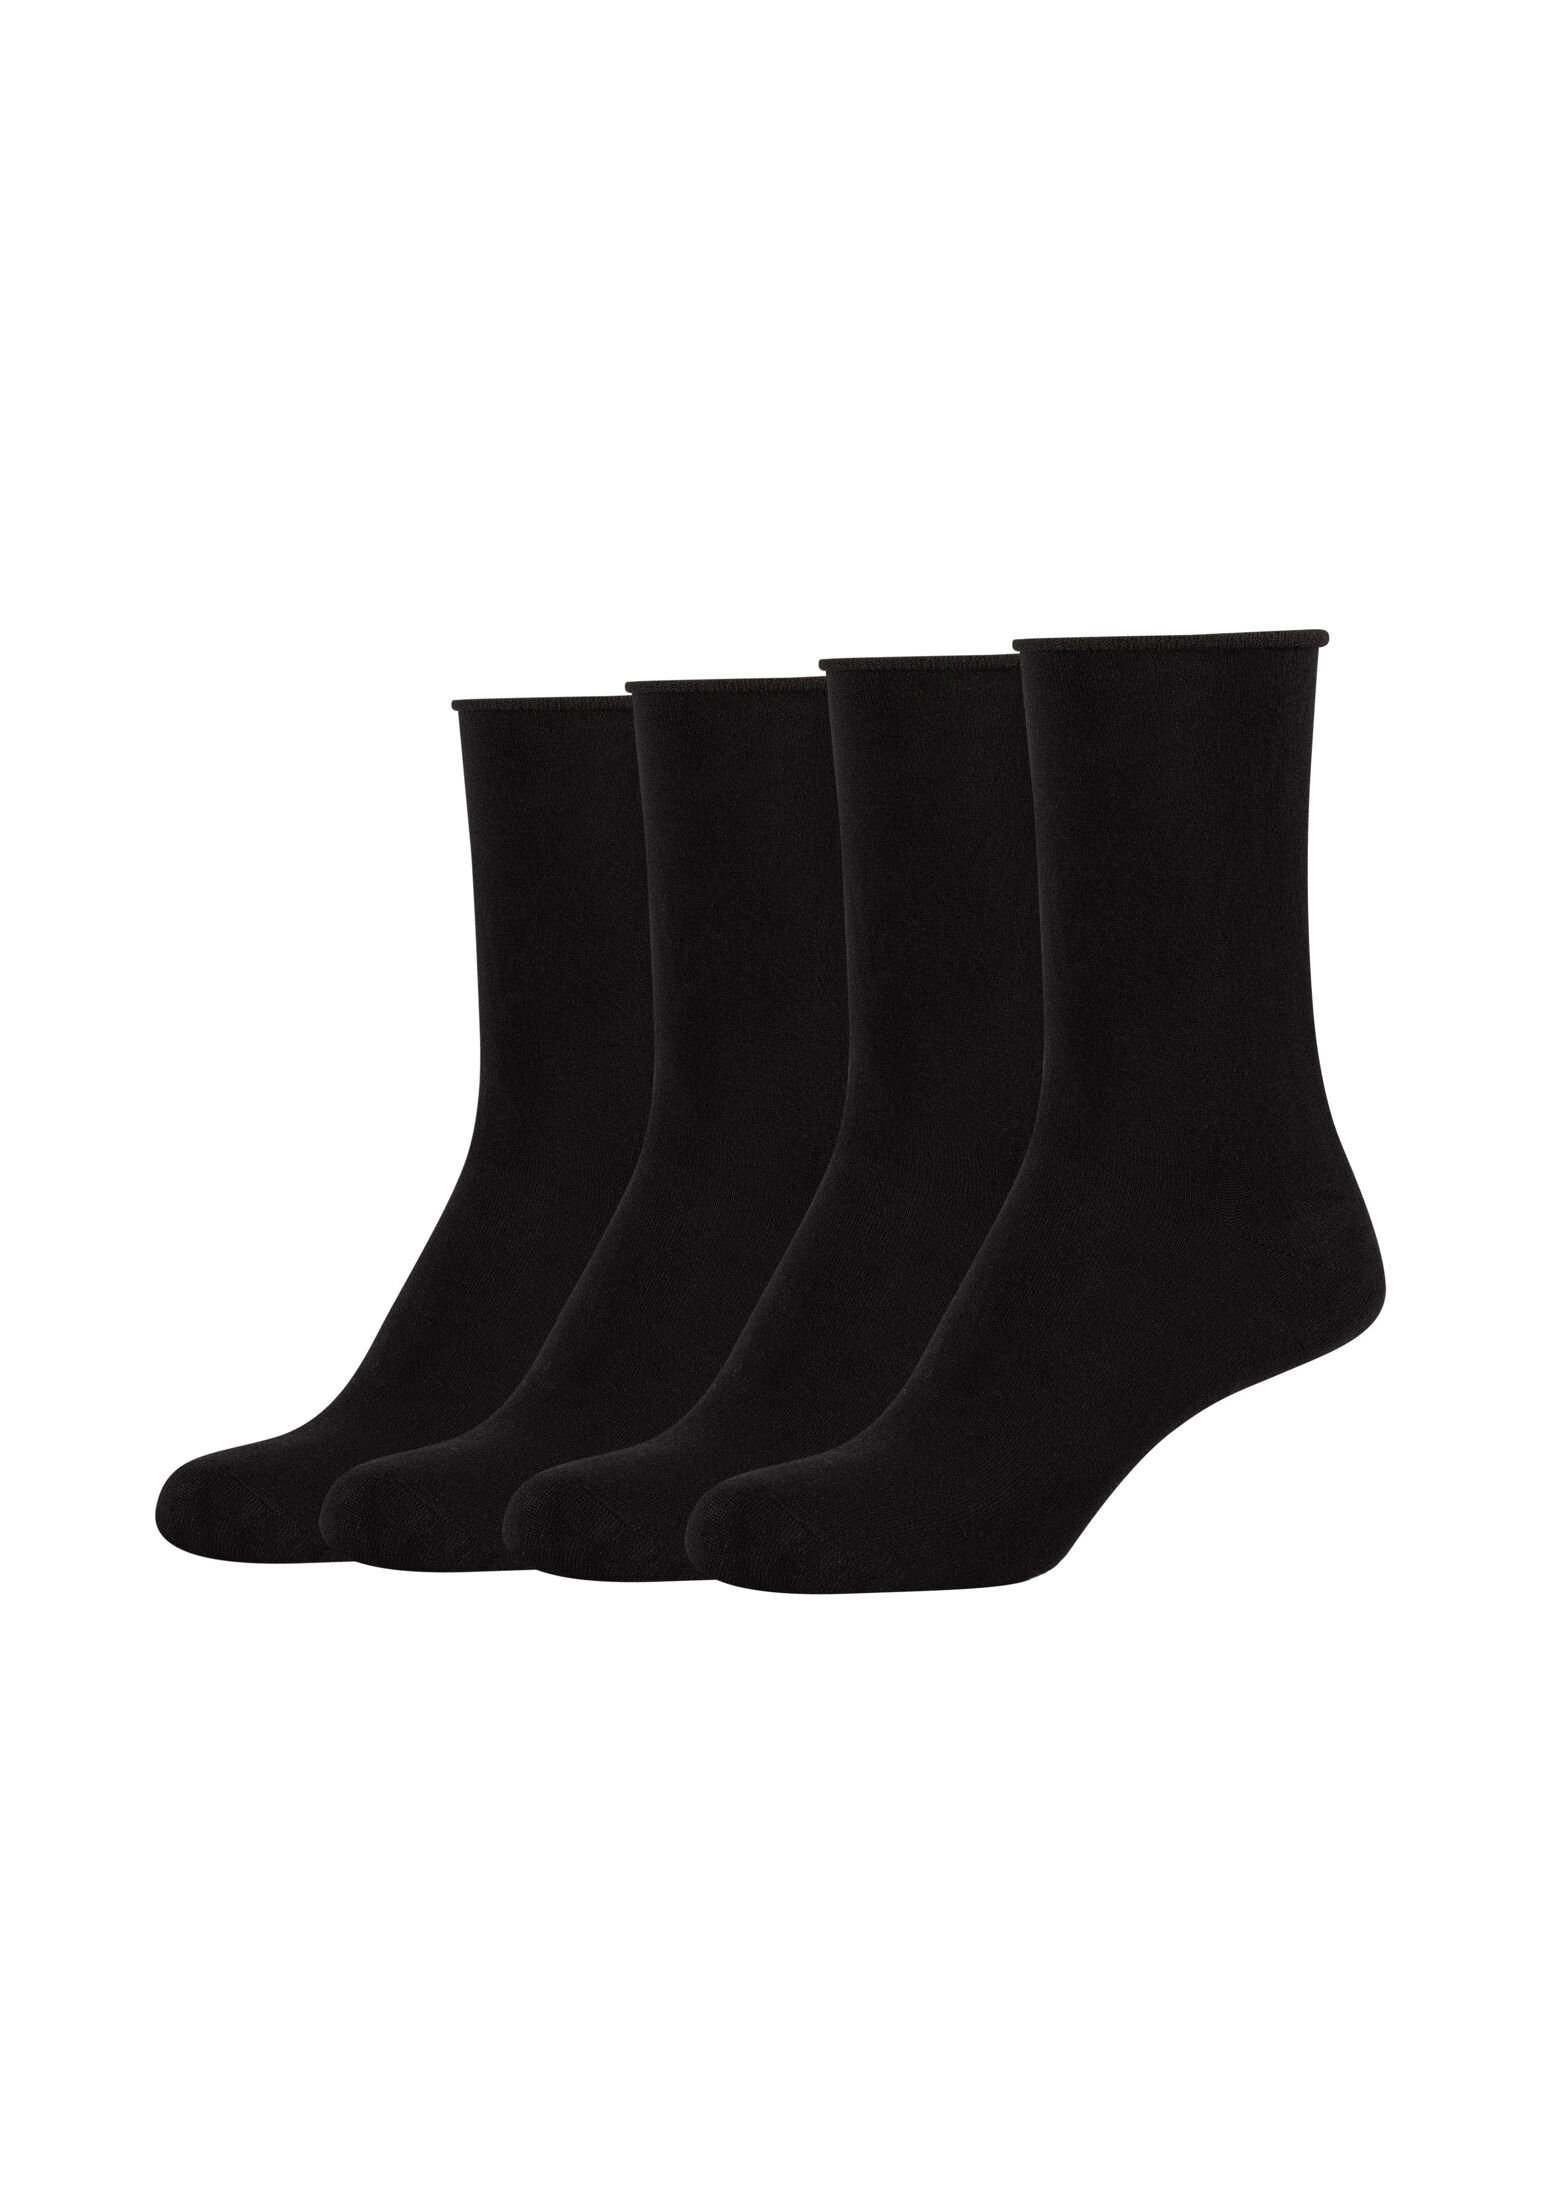 s.Oliver Socken Socken 4er Pack black